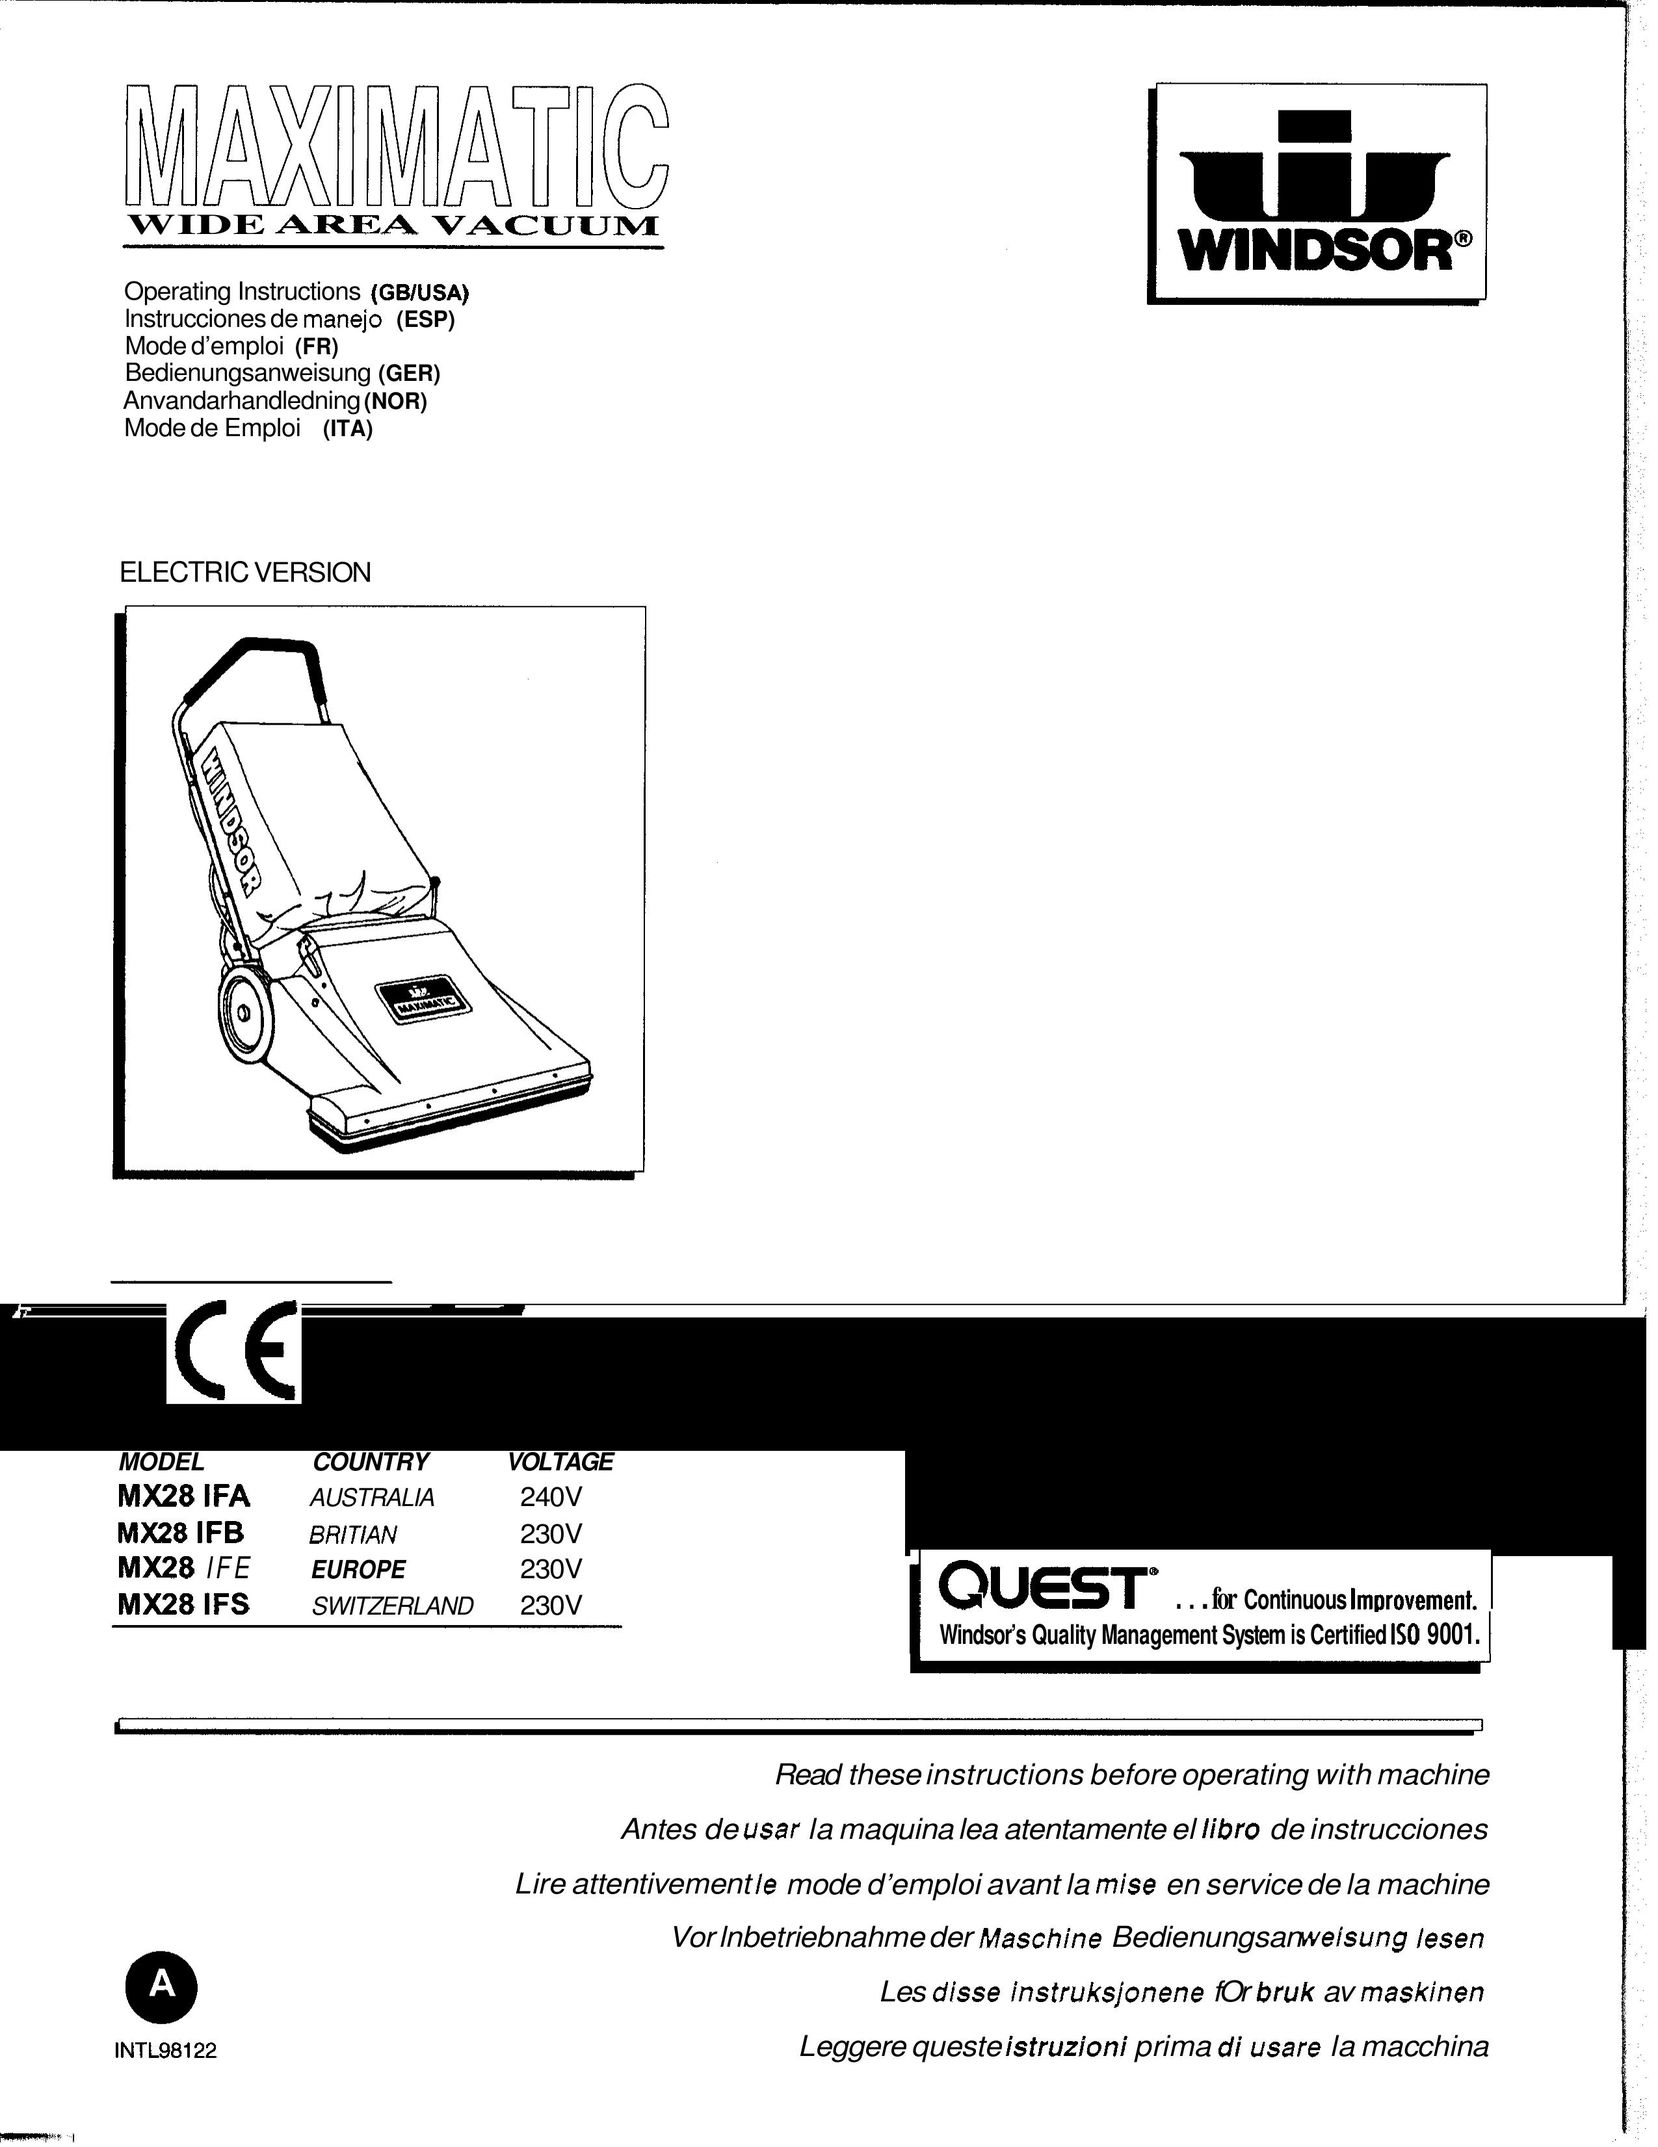 Maximatic MX28 IFE Vacuum Cleaner User Manual